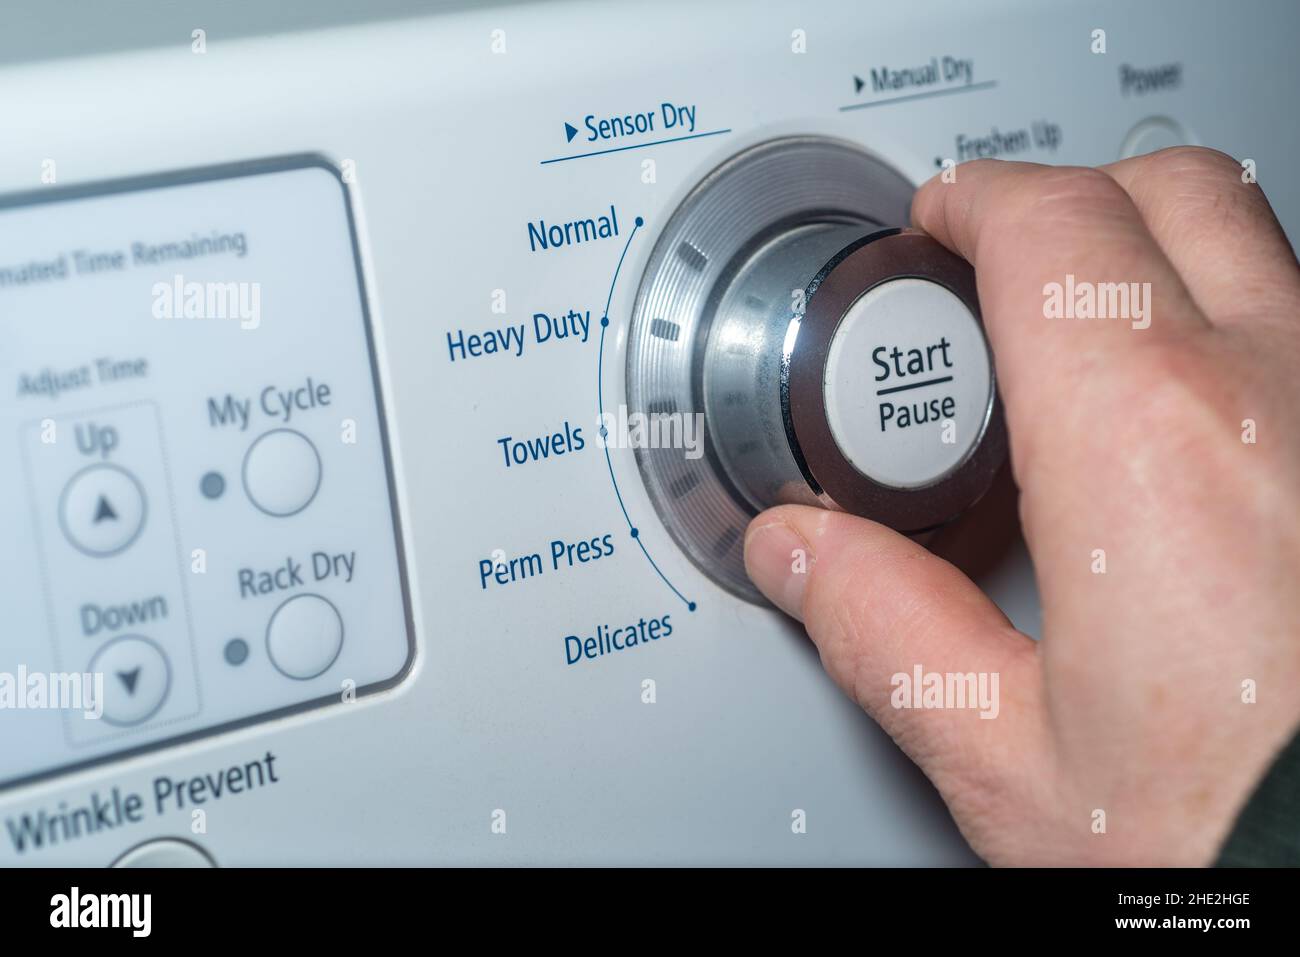 Gire con la mano el mando del secador para ajustar el ajuste. Foto de stock